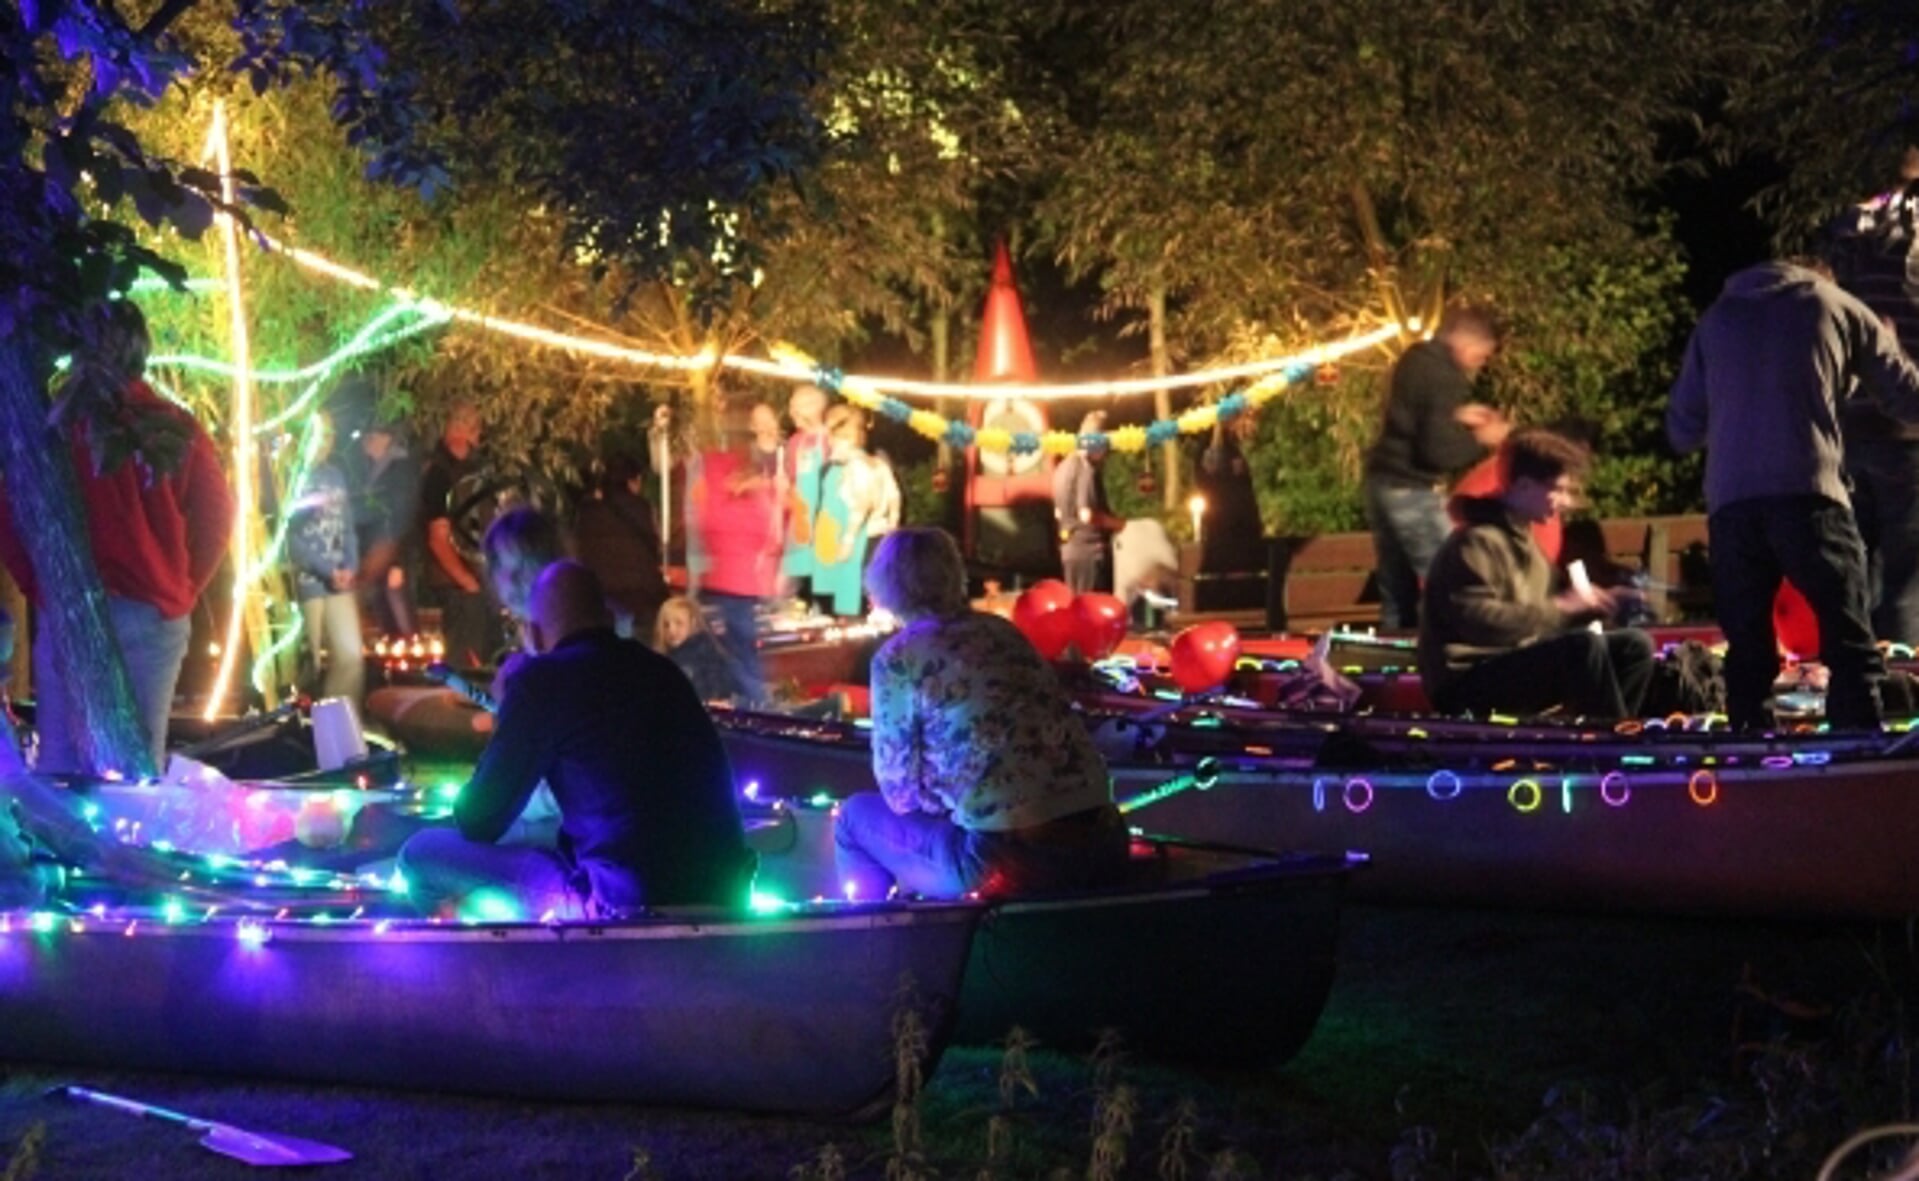 Bij KV De Pagaai liggen de versierde kano's klaar om het water in te gaan. Ook dit jaar is er weer een Boxtel by Night.